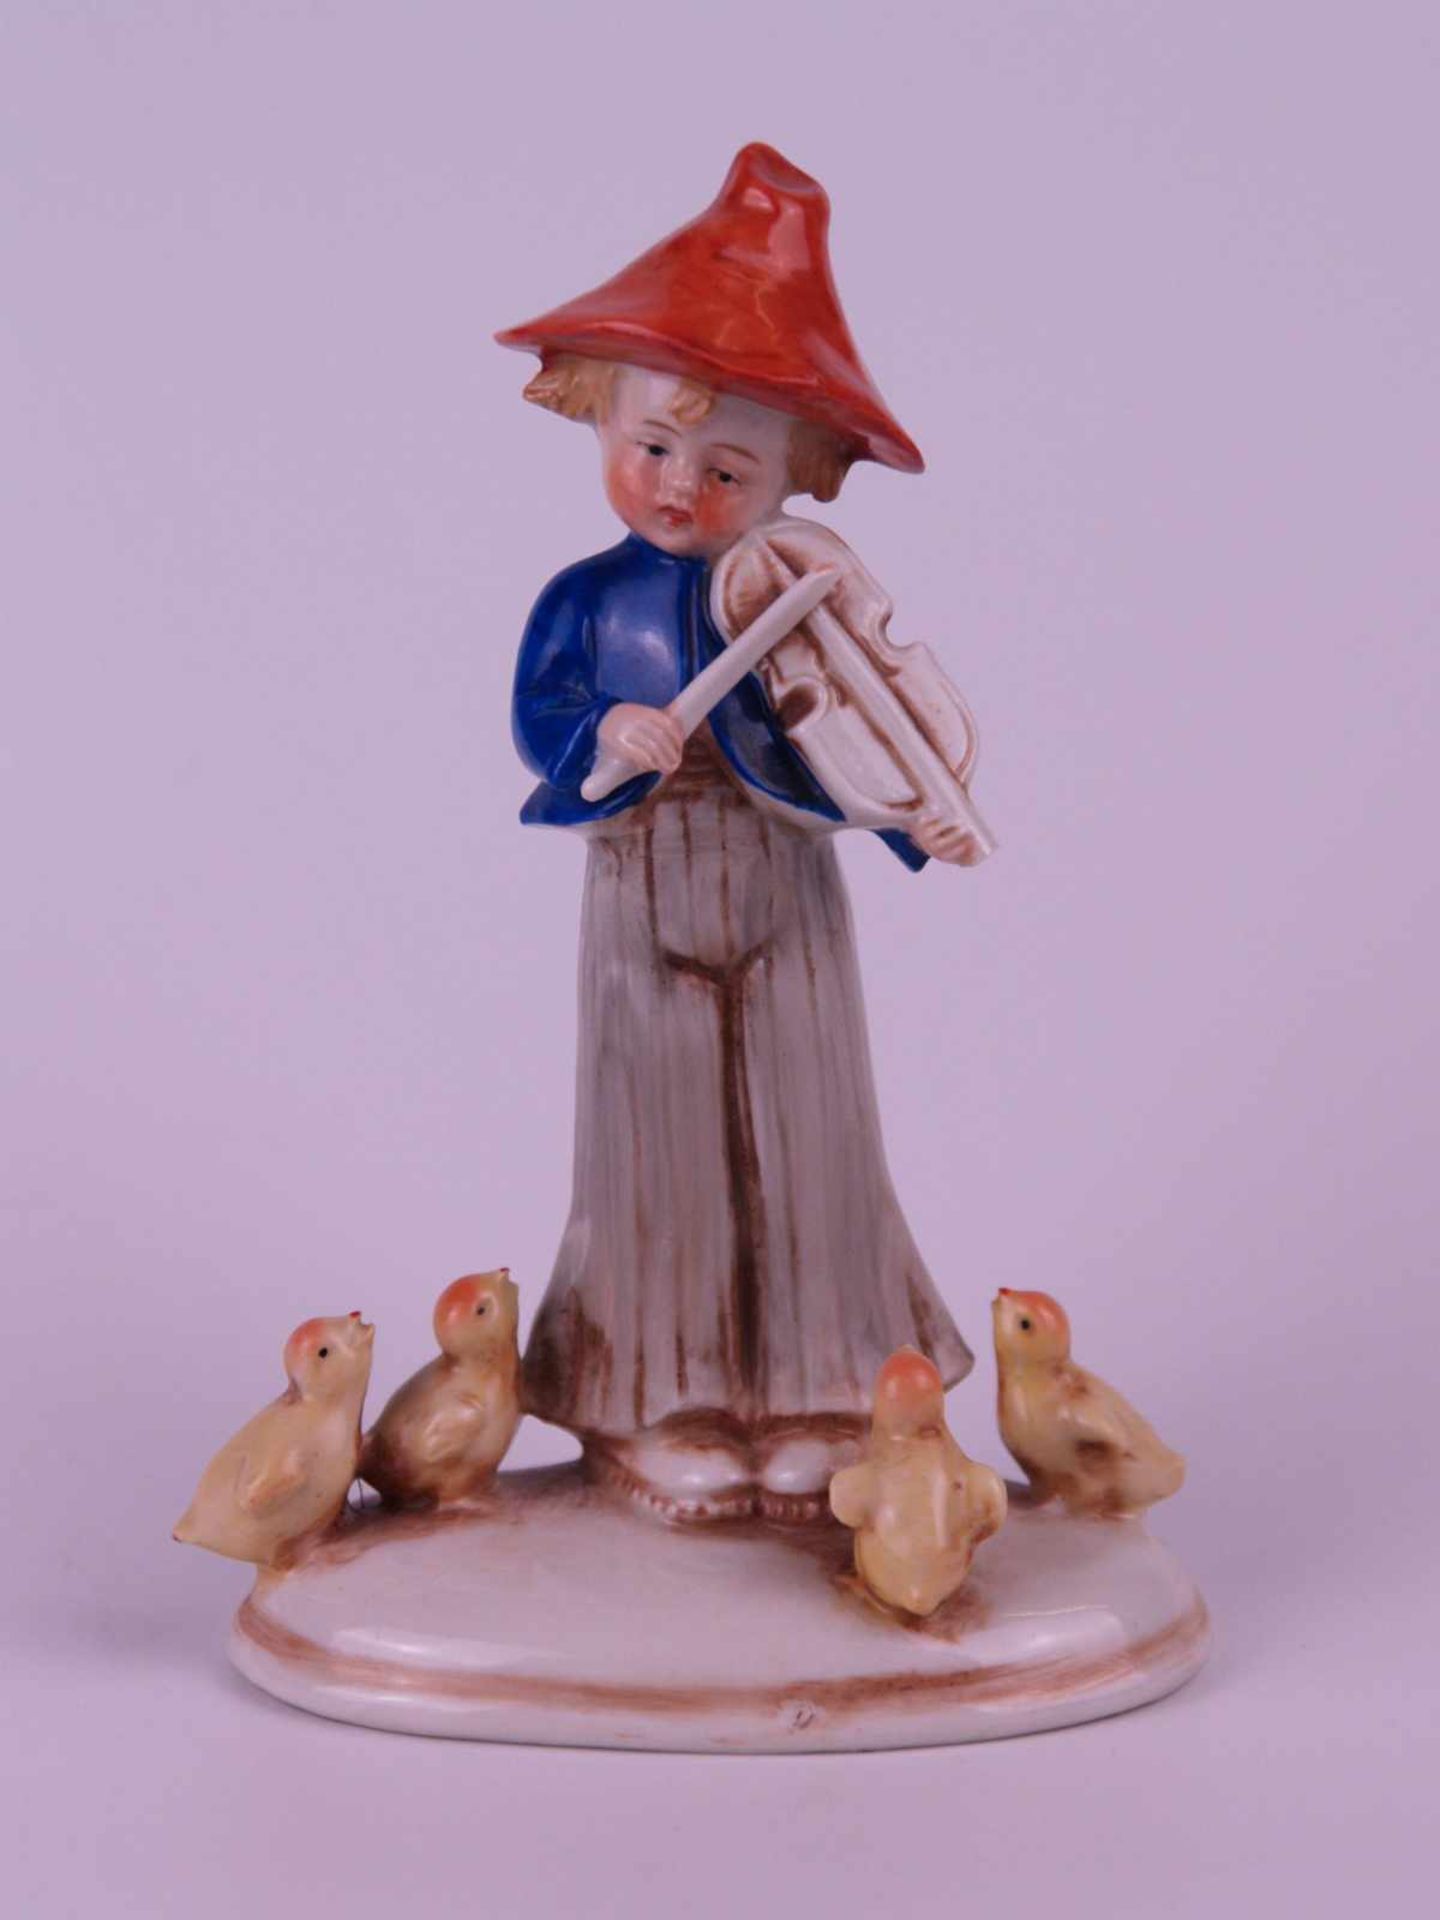 Porzellanfigur "Kleiner Geiger mit Küken als Publikum" - Fiedelnder Knabe mit Schlapphut, von